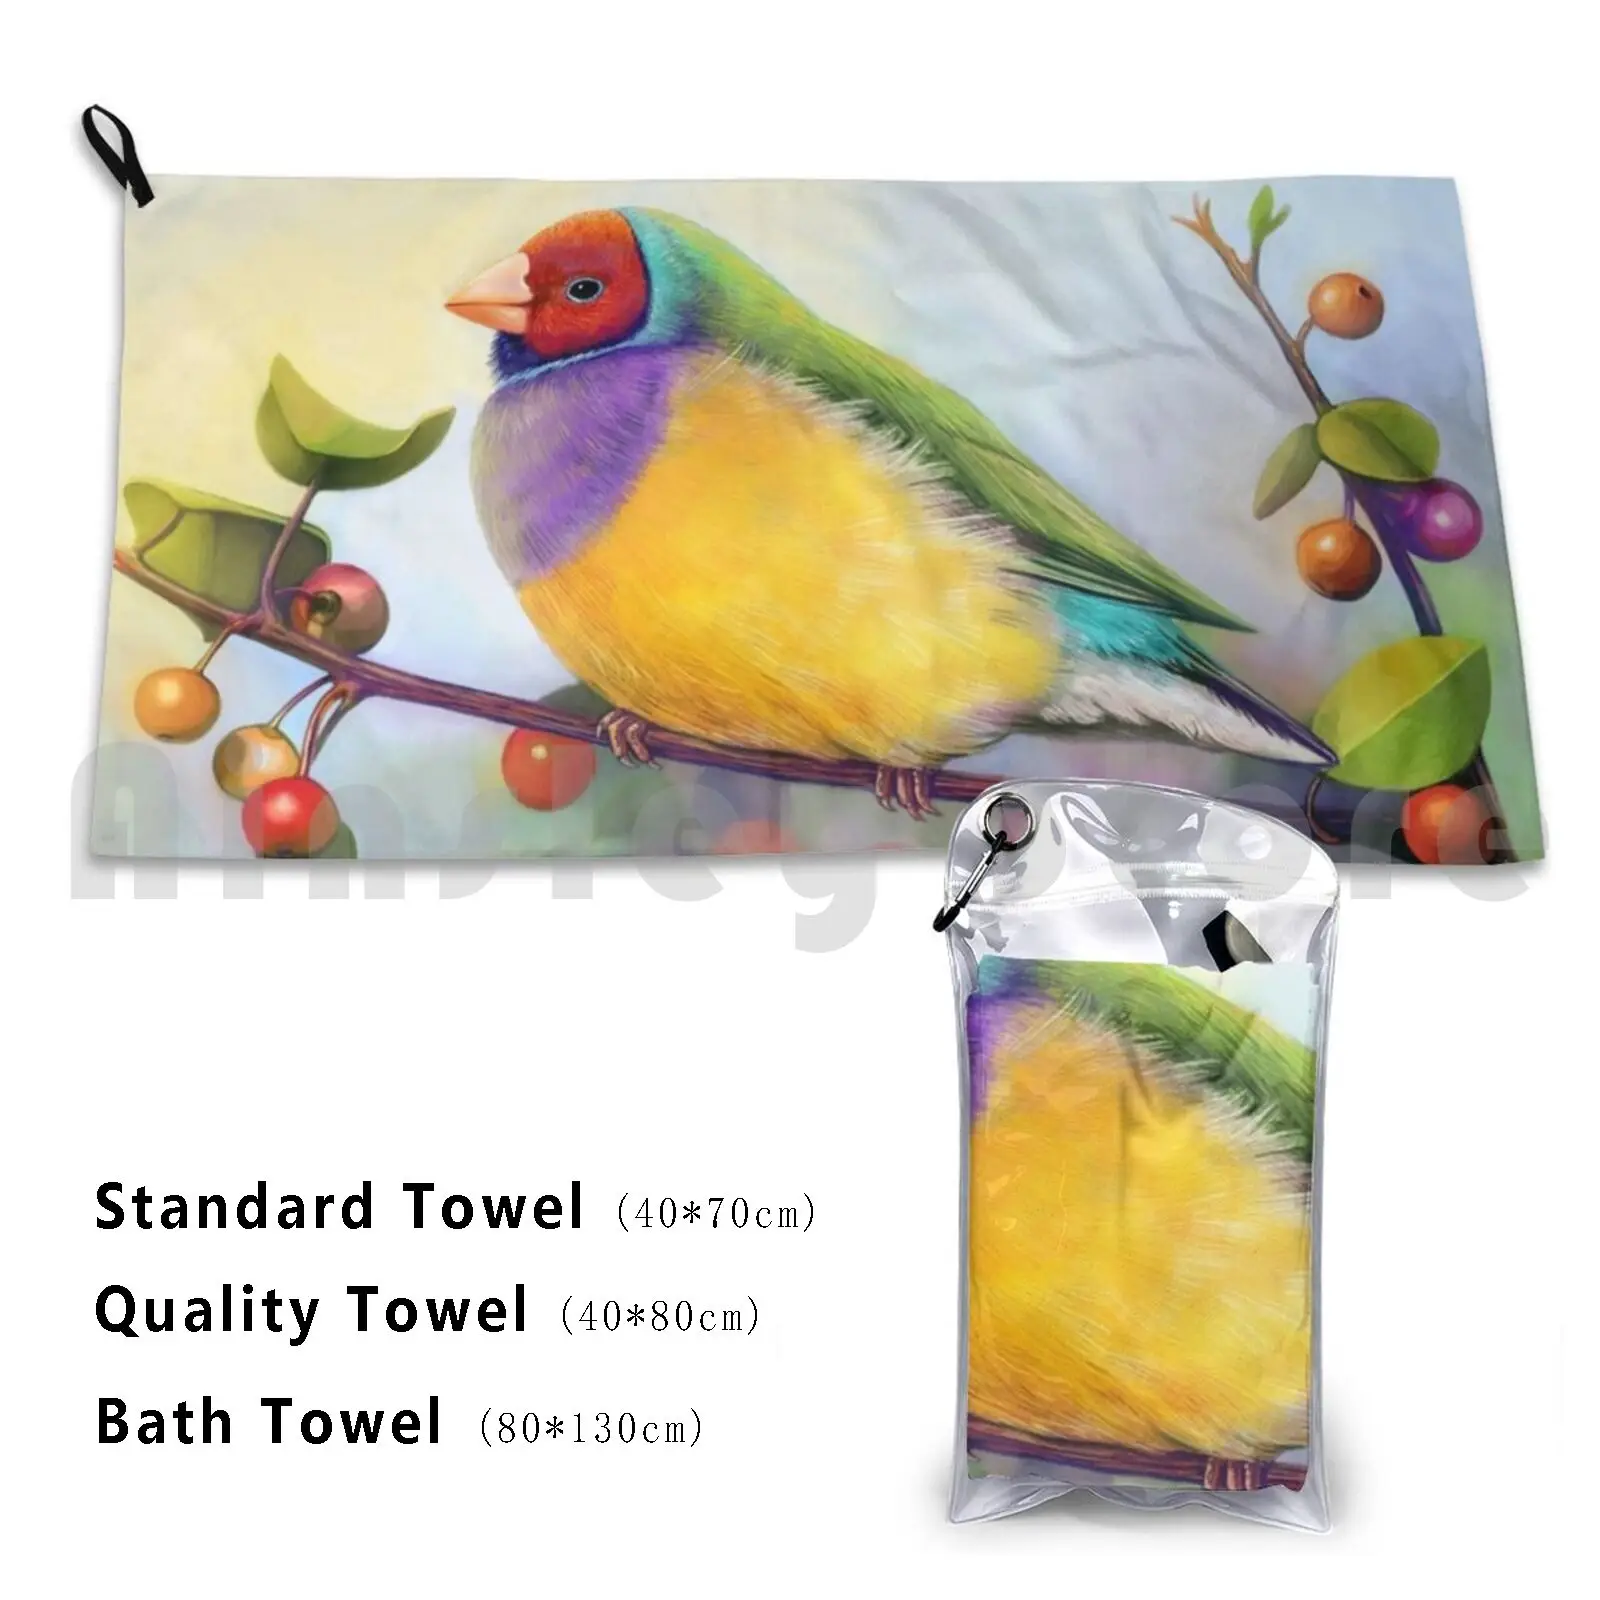 

Пляжное полотенце с реалистичной росписью Gouldian Finch, быстросохнущее качественное полотенце, Дамский гулдиан Finch Gouldian Finch Bird